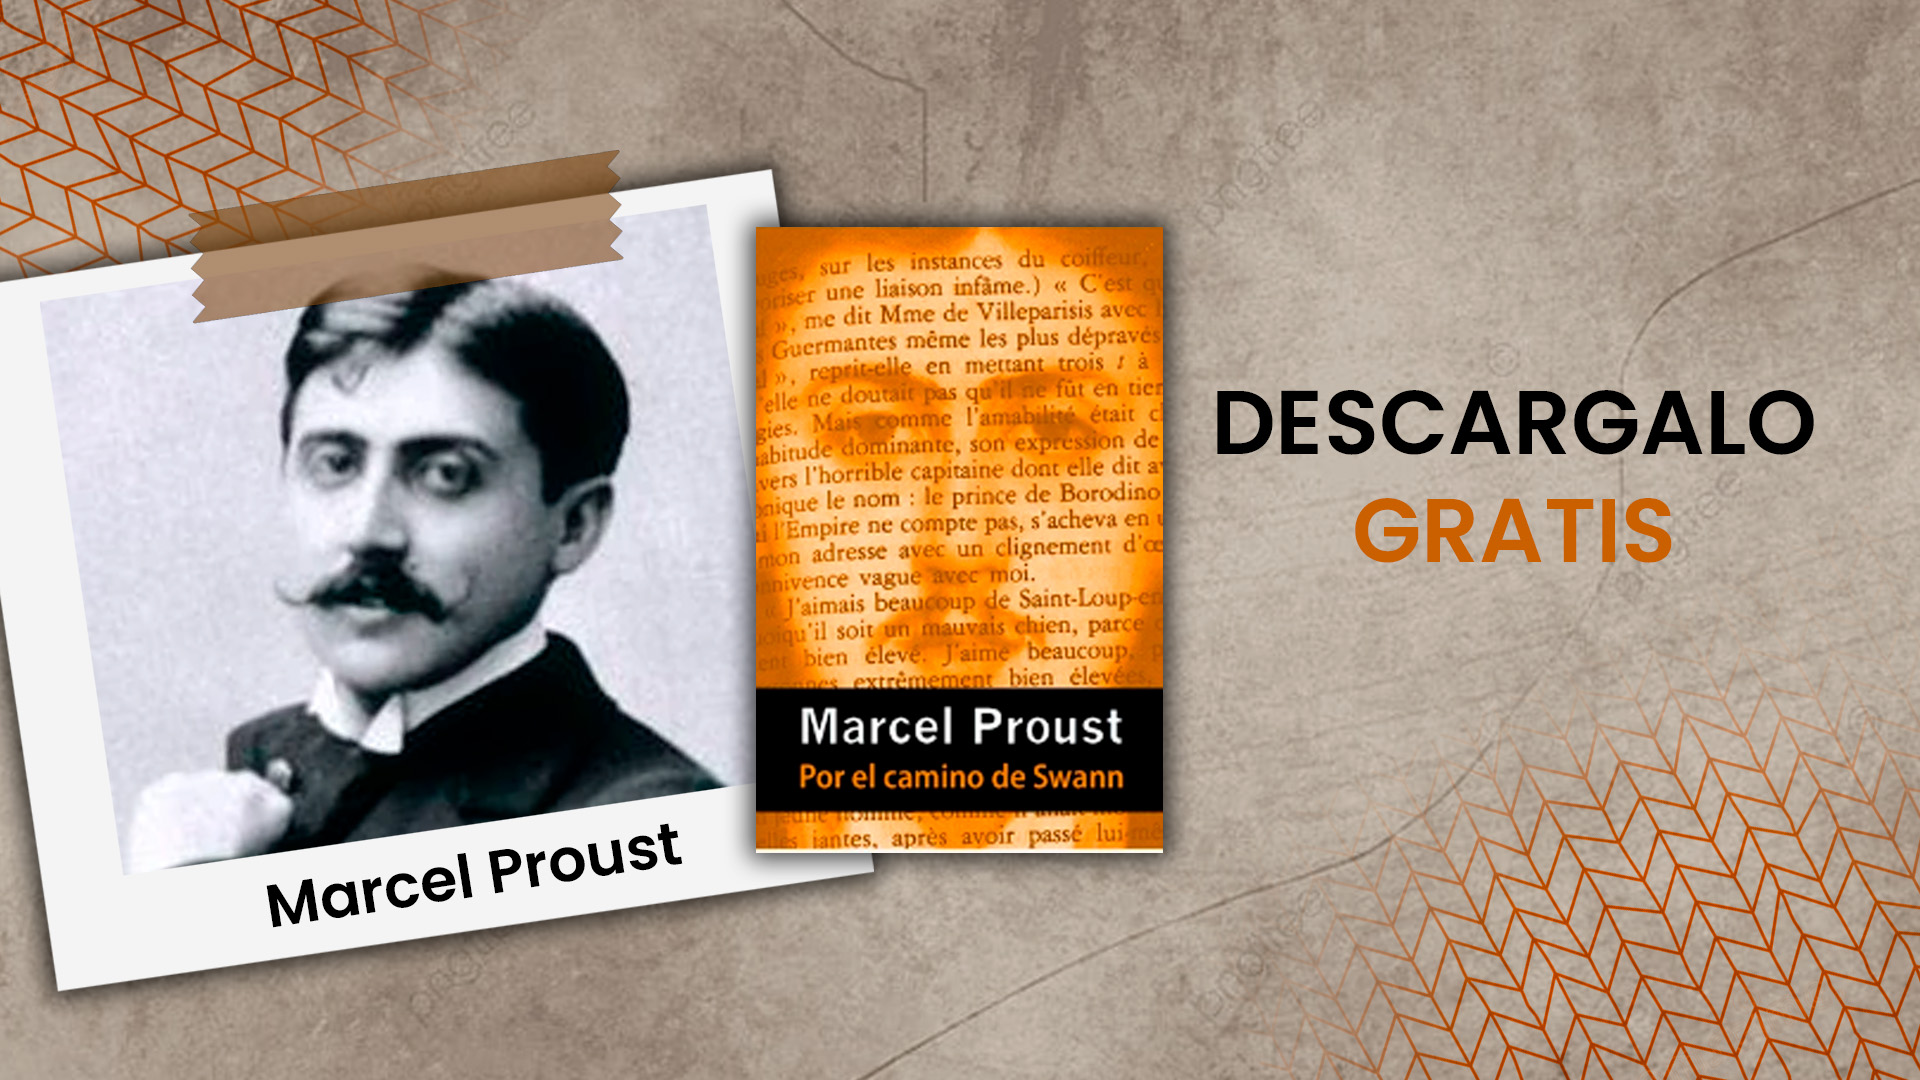 Marcel Proust y la primera parte de "En busca del tiempo perdido", "Por el camino de Swann". 